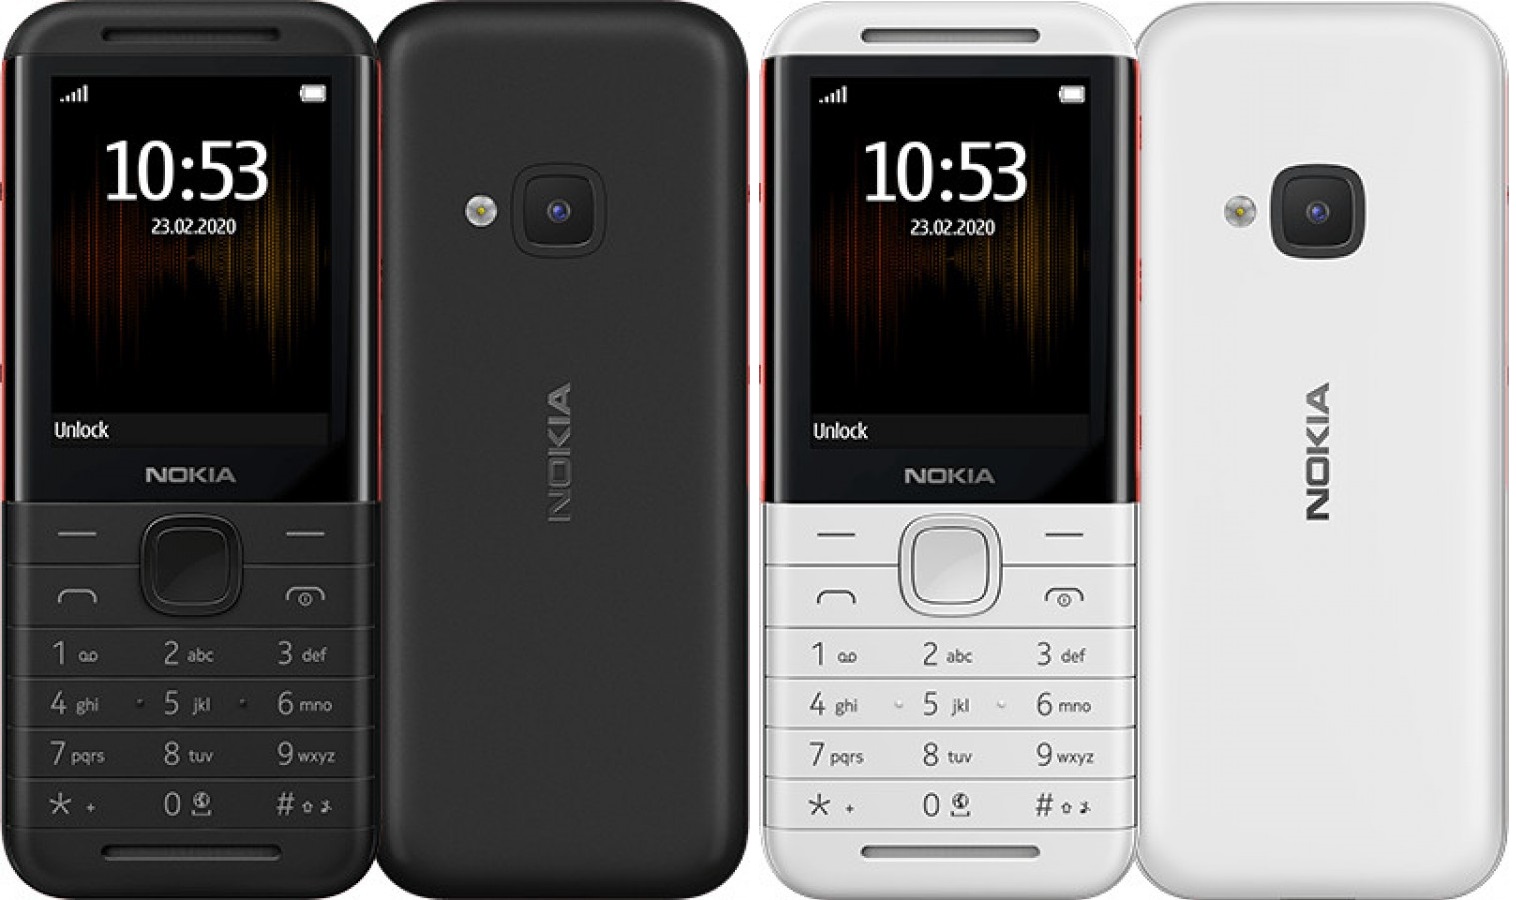 Nokia 5310-1